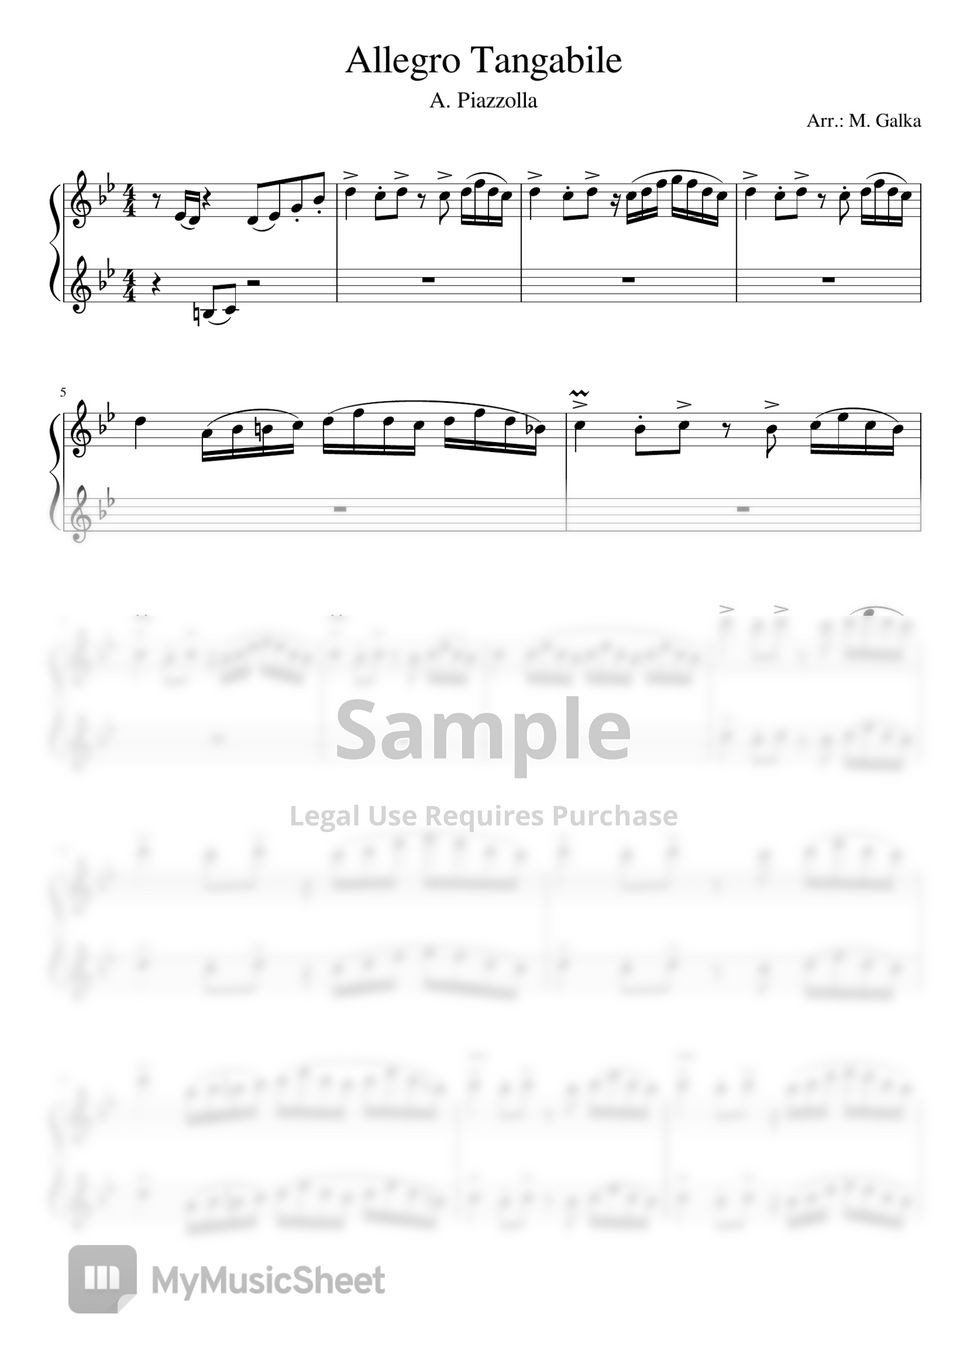 阿斯托尔·皮亚佐拉 (Astor Piazzolla) - 探戈戏剧“布宜诺斯艾利斯的玛丽亚”中的快板 (Allegro tangabile) 钢琴四手联弹 (Piano 4 hands) by Magdalena Galka